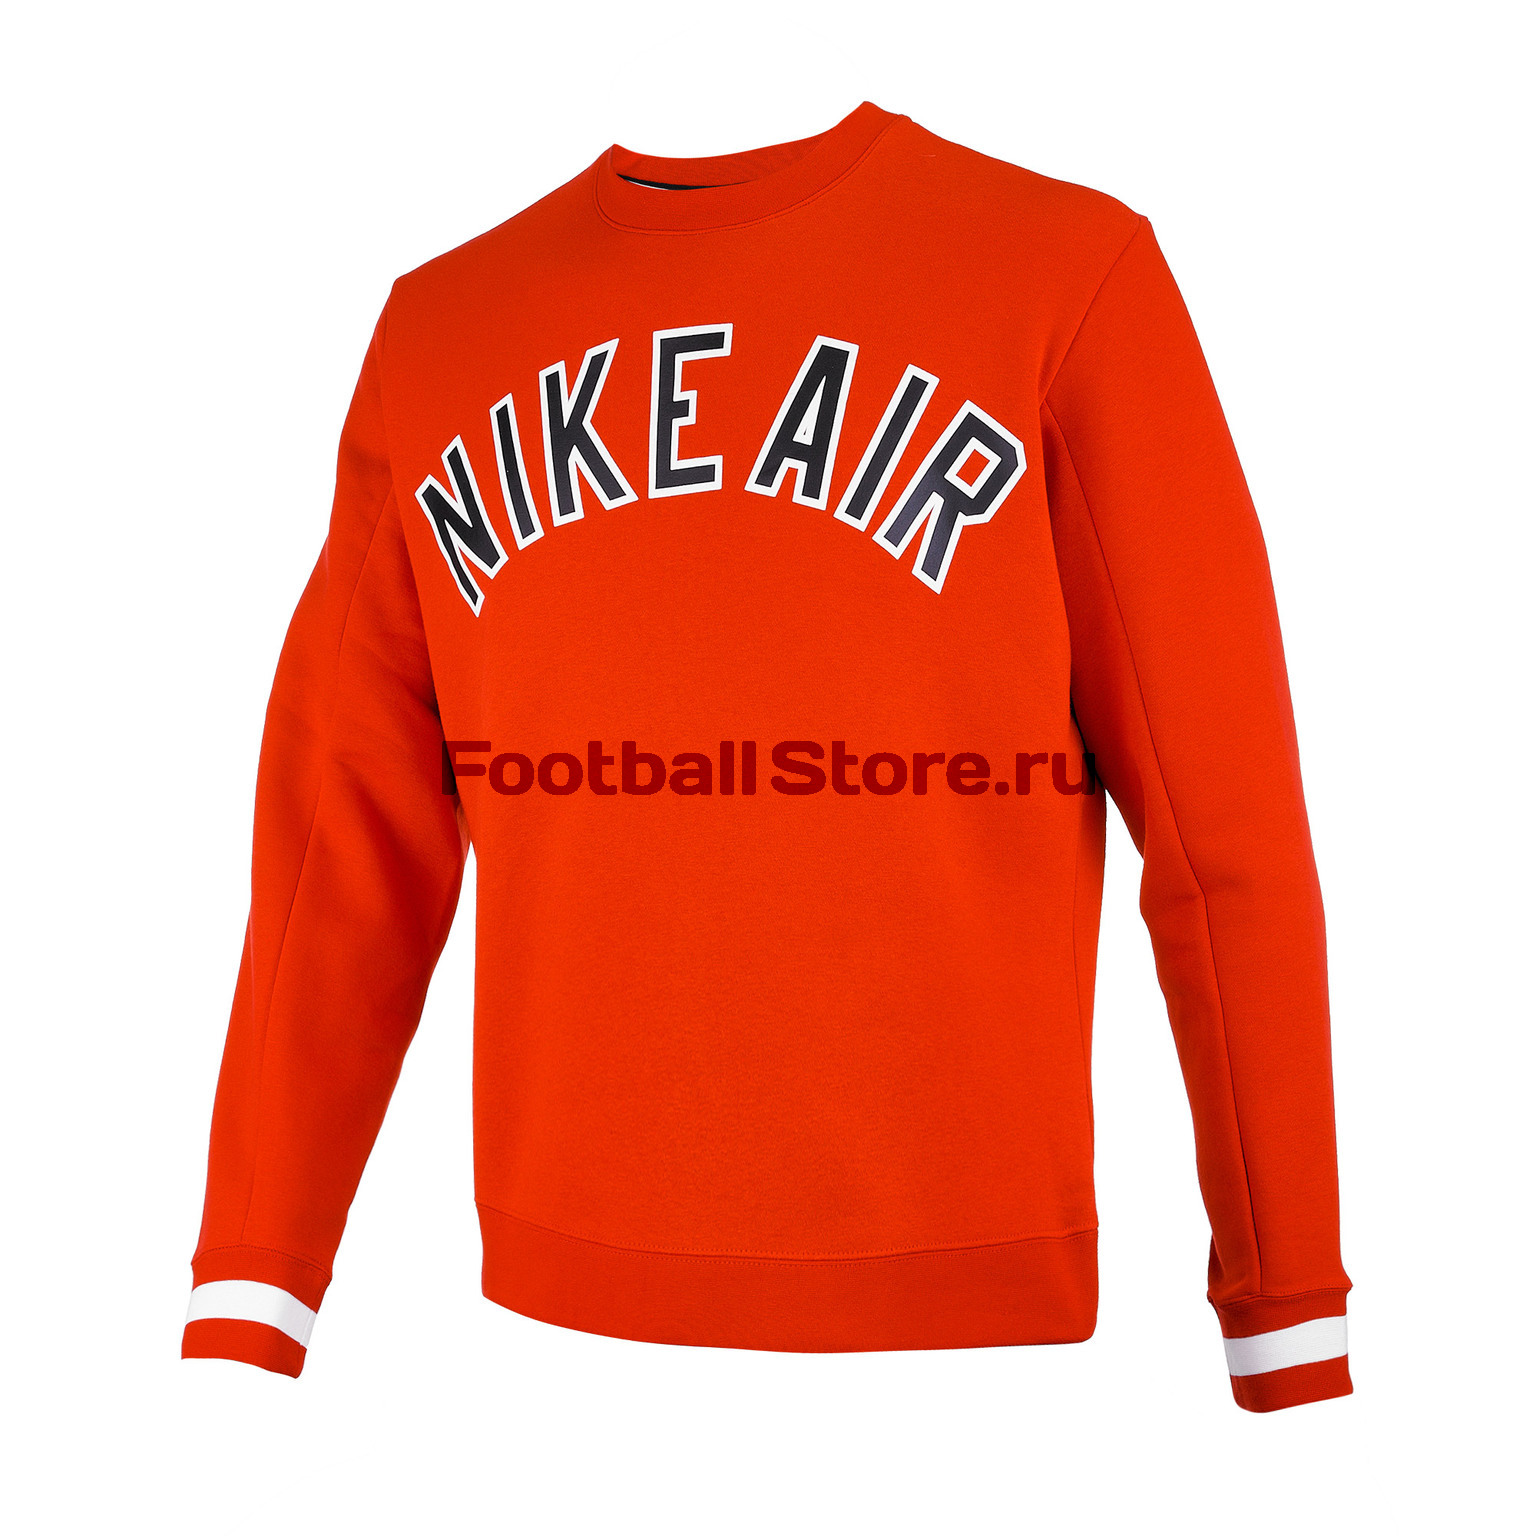 Толстовка Nike Air Crew FLC AR1822-657 – купить в интернет магазине footballstore, цена, фото